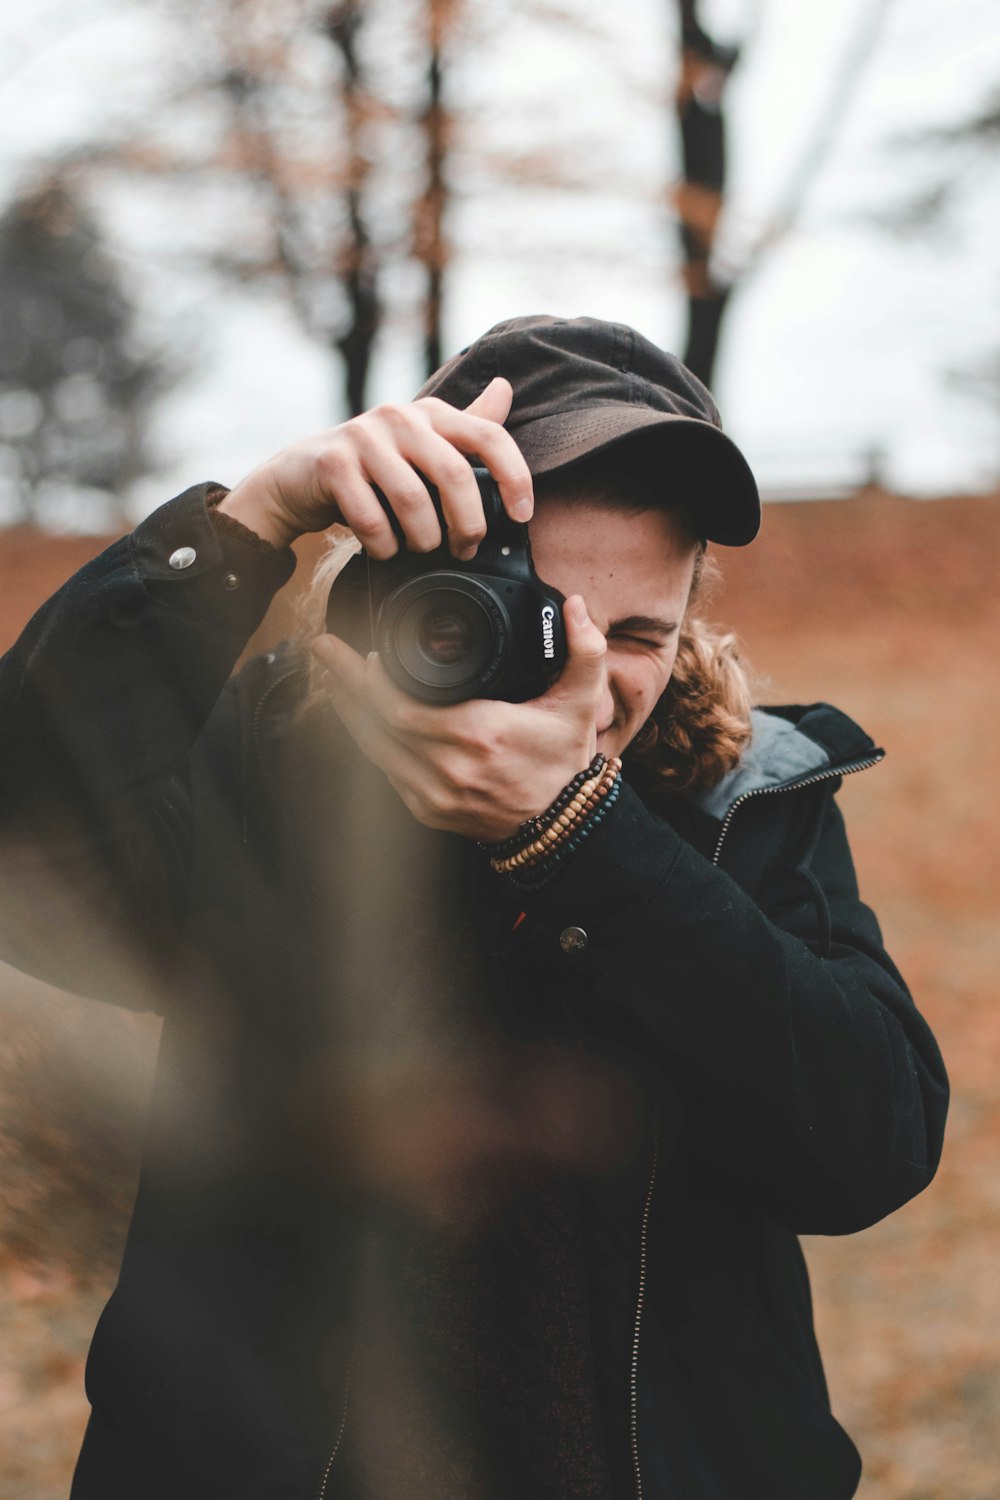 man taking photo using DSLR camera